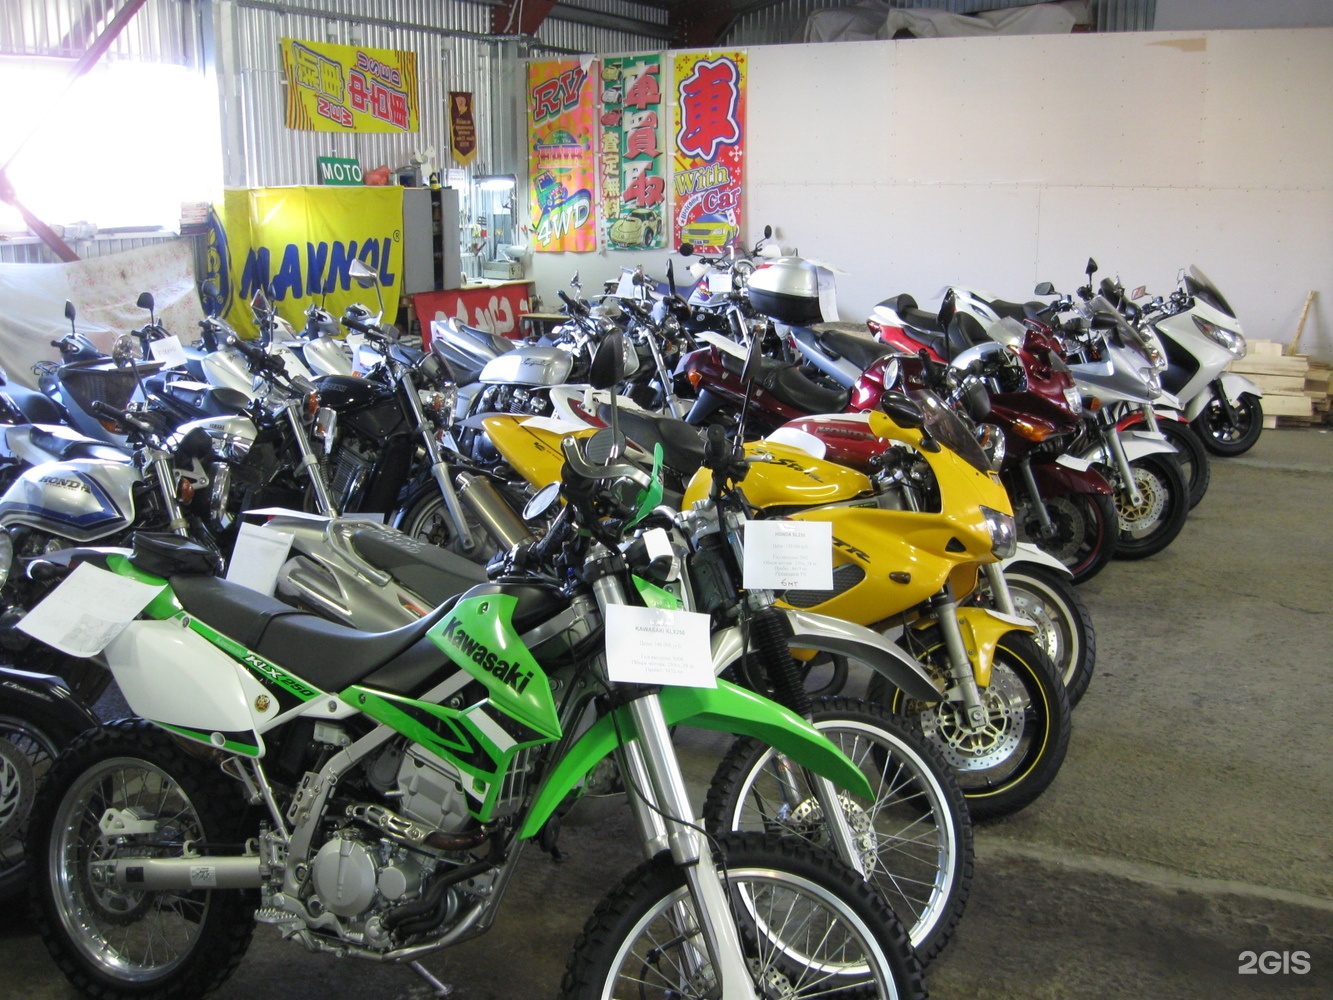 Купить бу мотоцикл в воронеже. Honda Yamaha Дорожник. Аукцион мотоциклов. Мототехника из Японии. Аукцион мотоциклов из Японии.